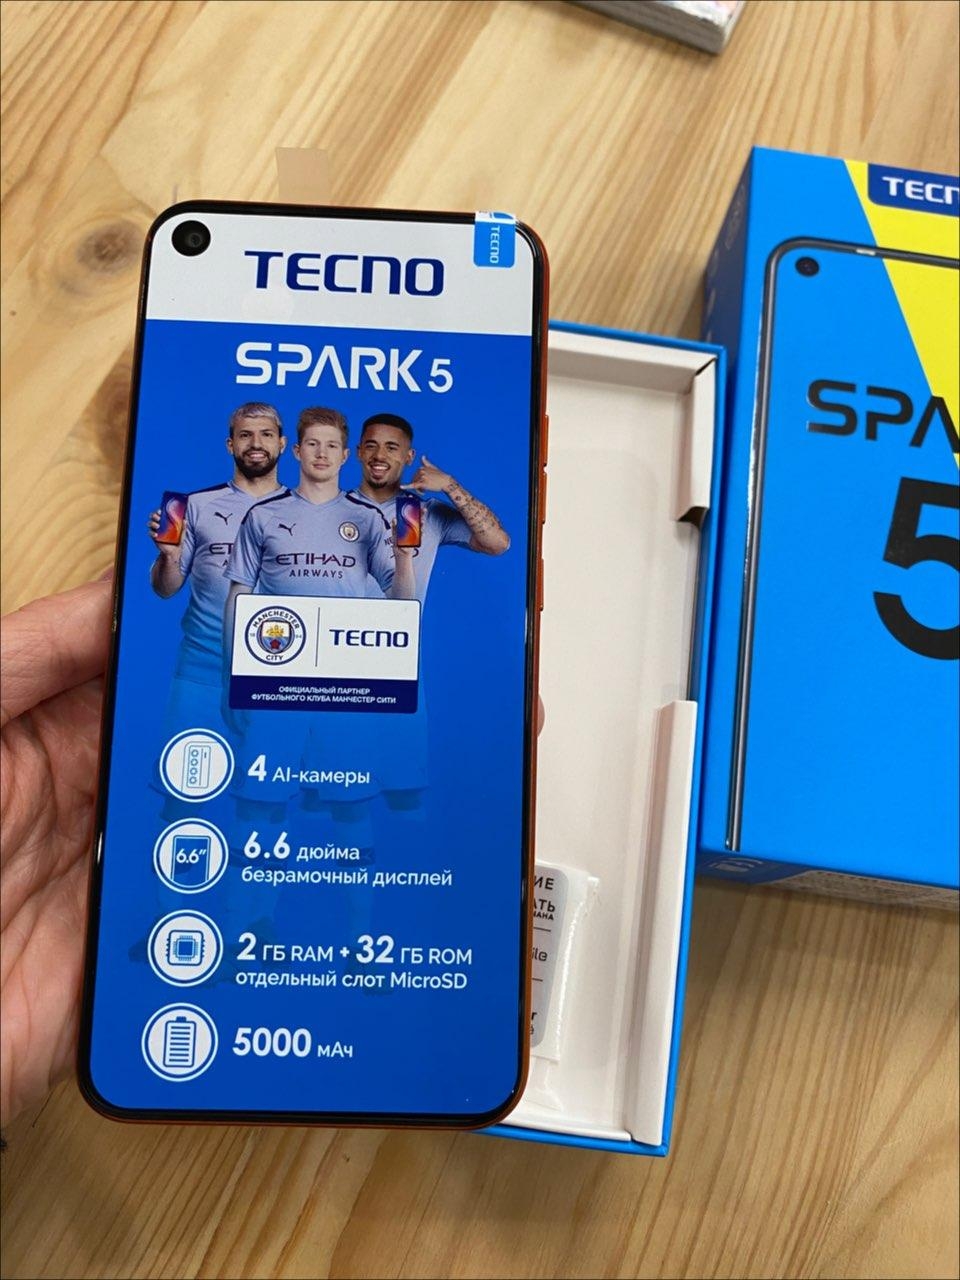 Tecno Spark 5 - Идеален в своей категории